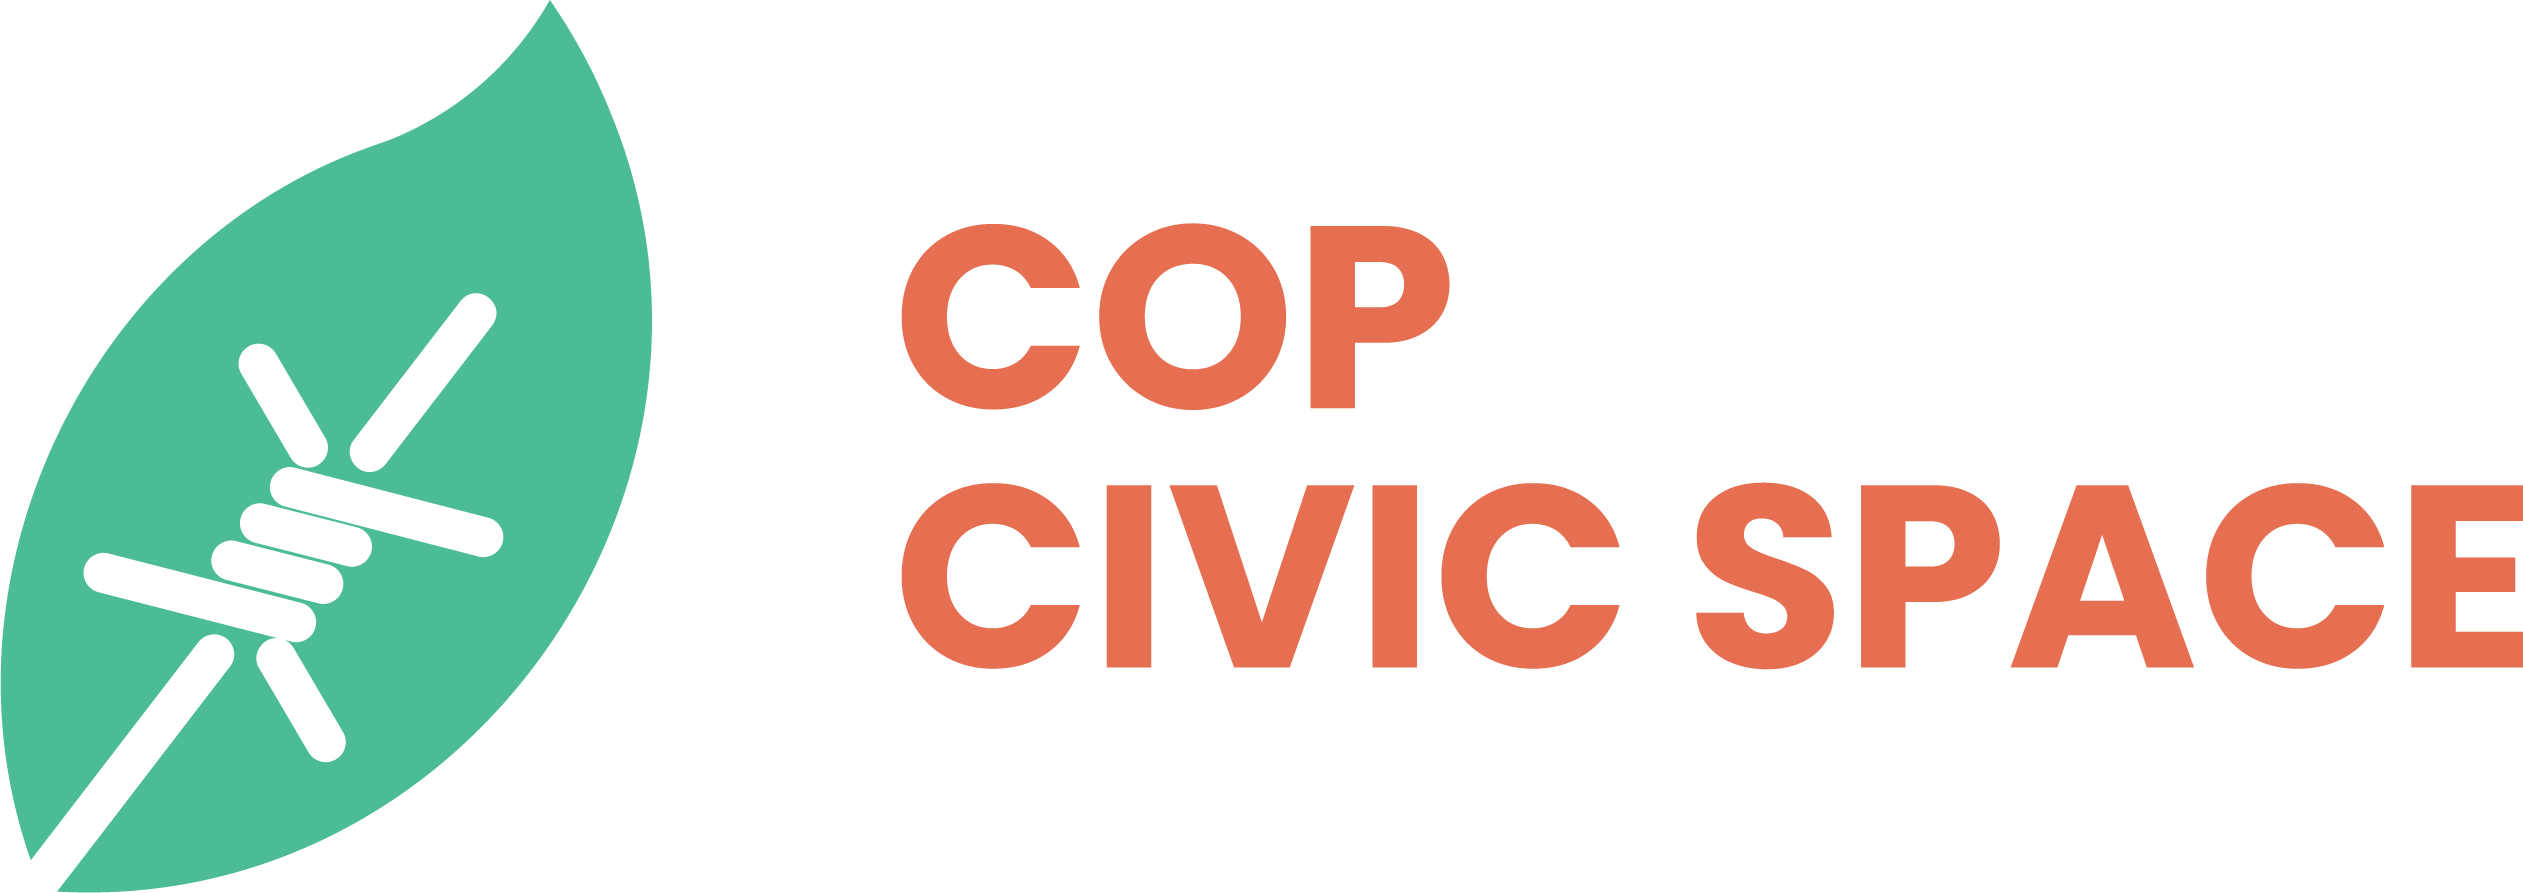 Cop Civics Space